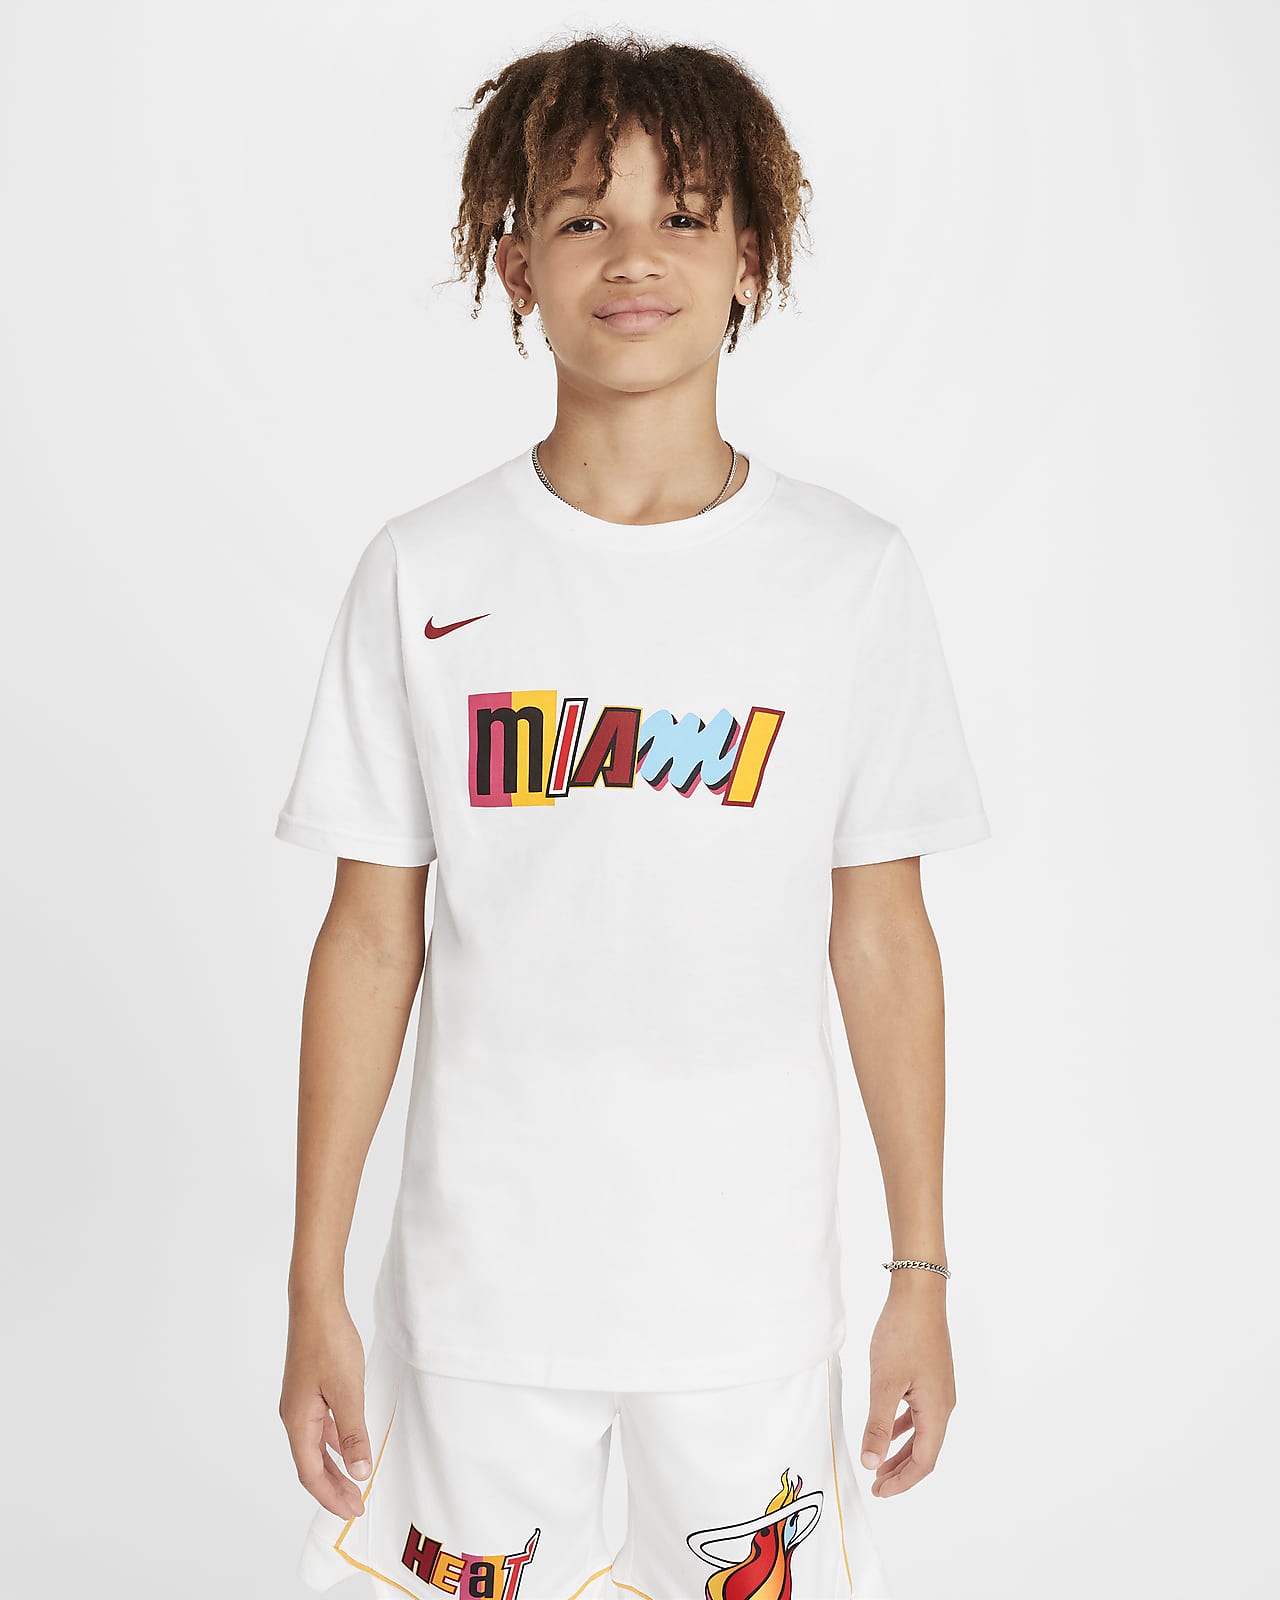 Miami Heat City Edition Camiseta Nike NBA Logo - Niño/a